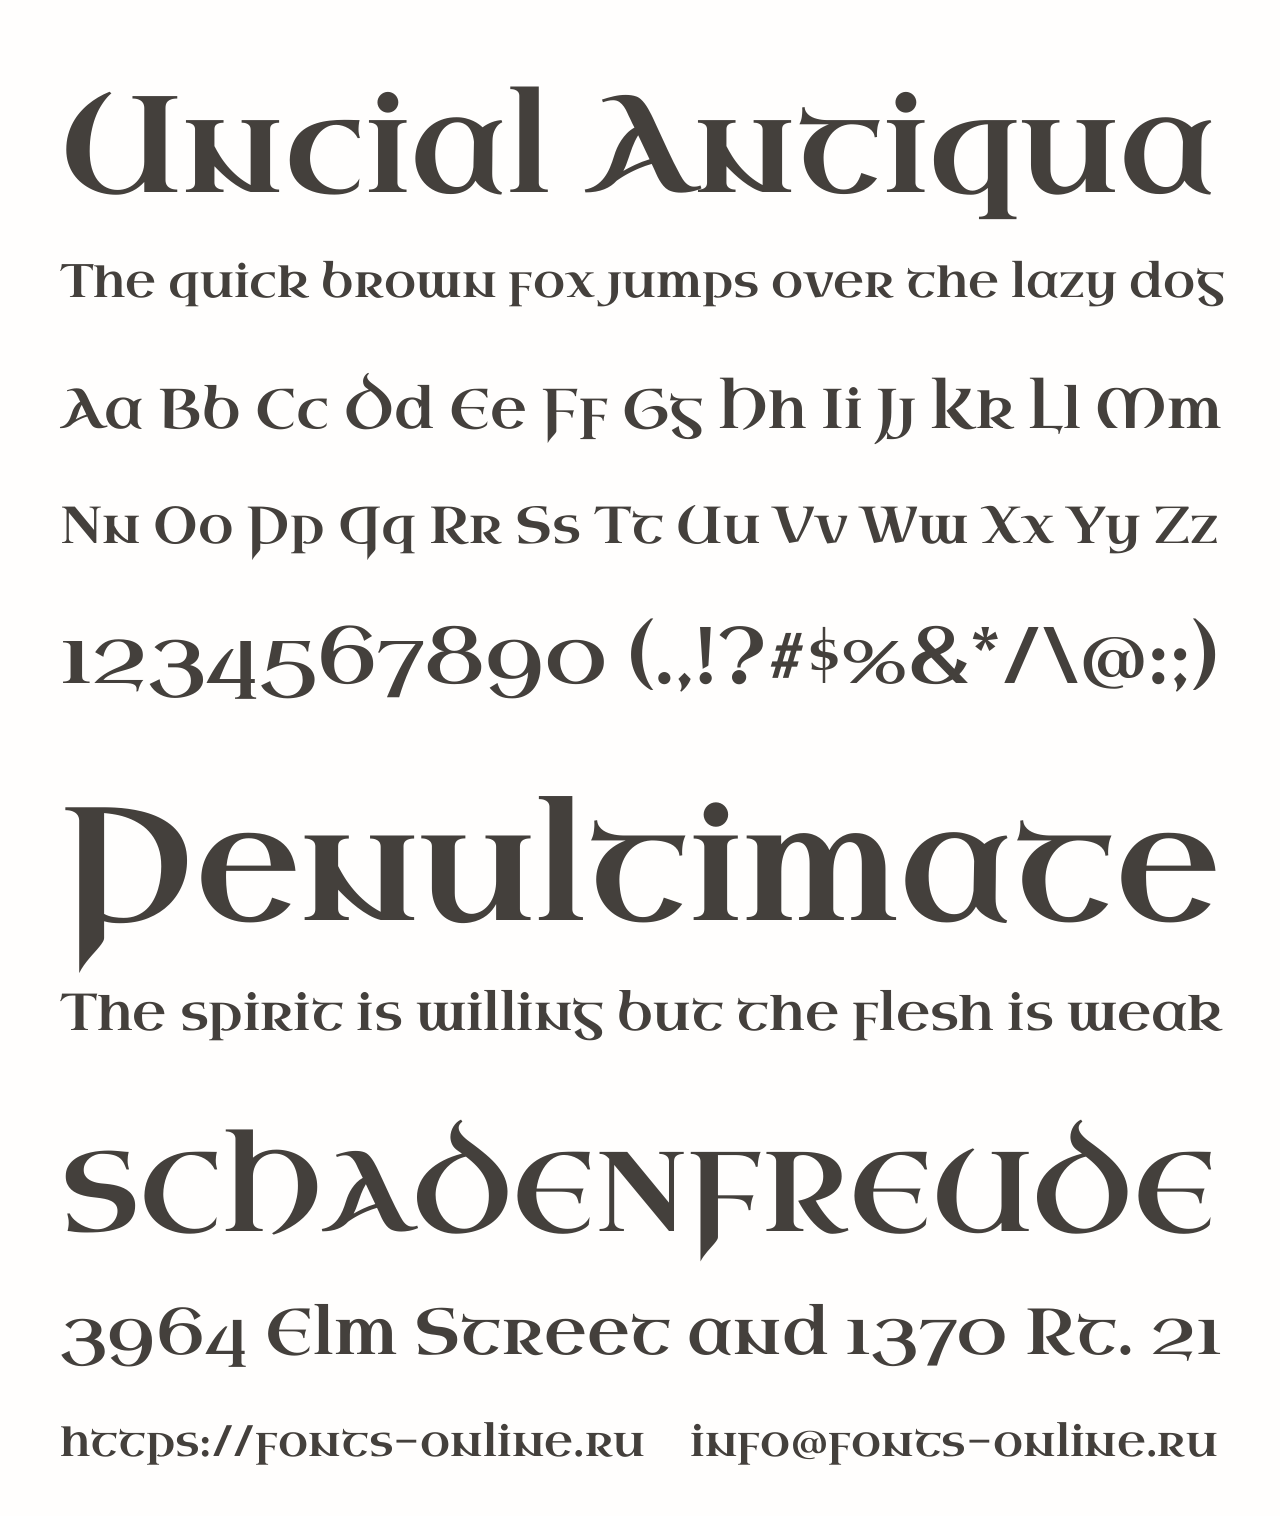 Шрифт Antiqua. Унциал шрифт кириллица. Uncial Antiqua кириллица. Римский унциал шрифт. Book antiqua шрифт